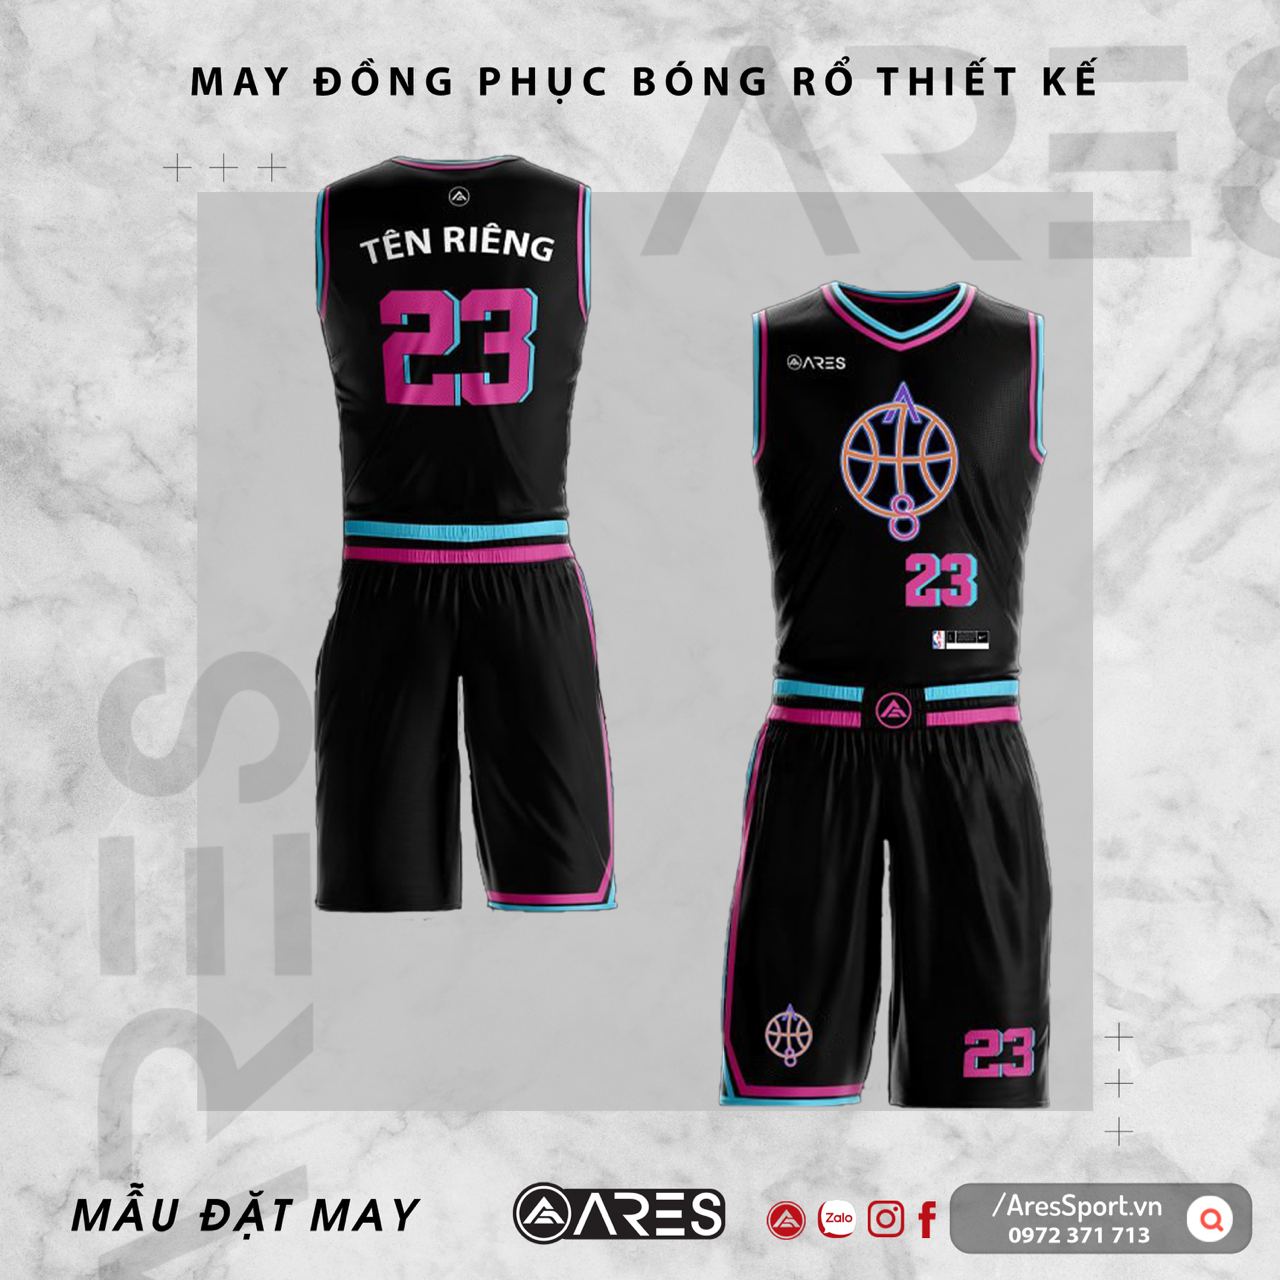 Đồng phục bóng rổ thiết kế A8 đen hồng miami sáng tạo